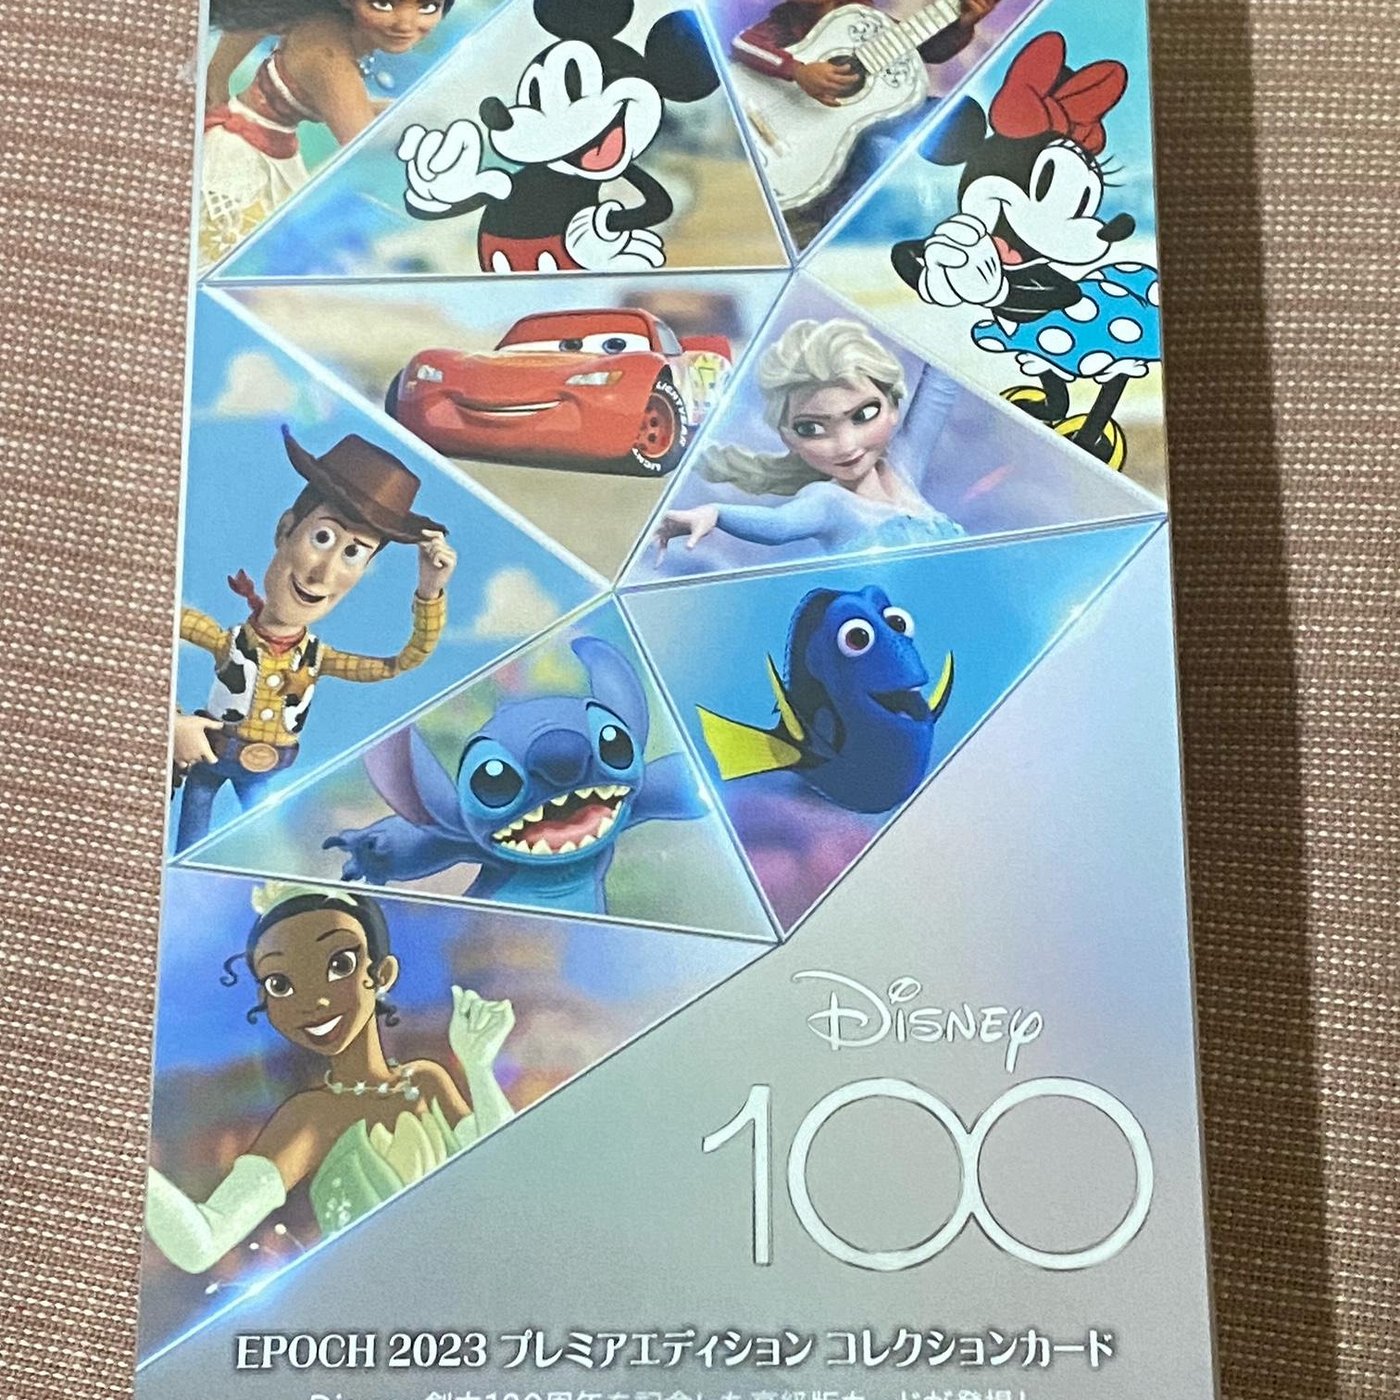 ディズニー100周年 2023 PREMIER EDITION BOX - Box/デッキ/パック